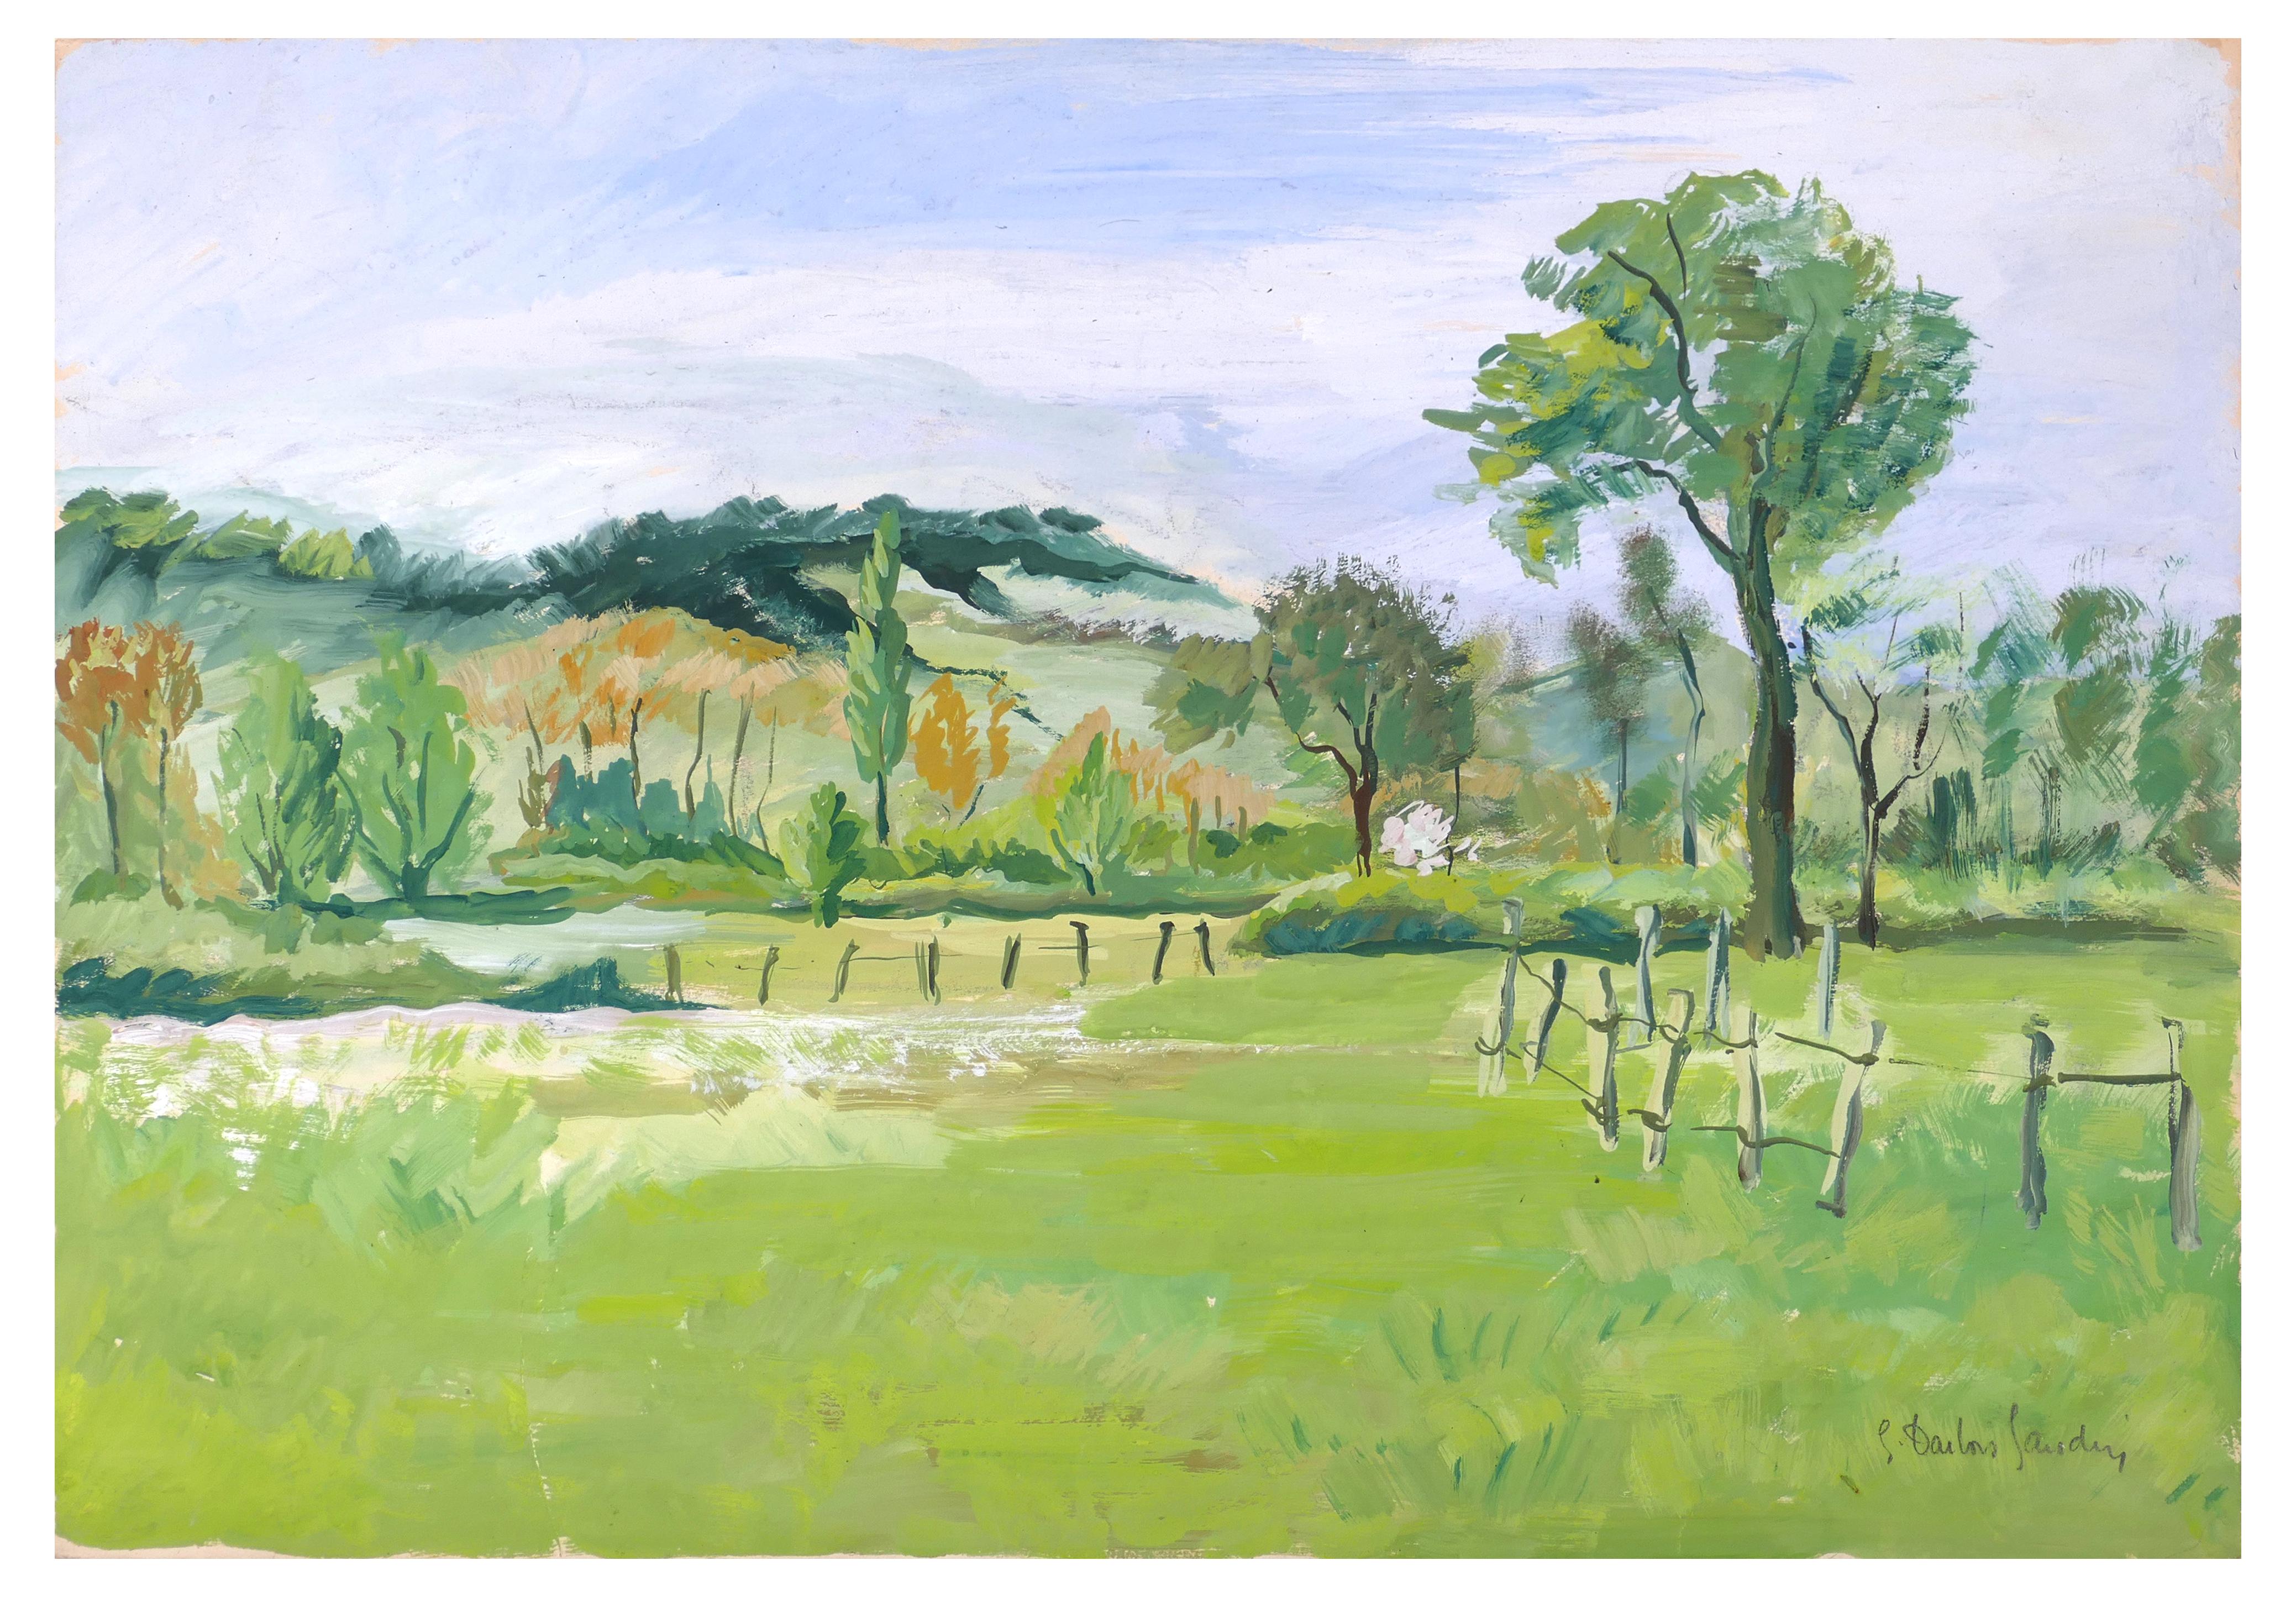 Landscape Painting Germaine-Irene Darbois-Gaudin - Paysage Hilly - Acrylique sur papier de G.-I. Darbois-Gaudin - Années 1970